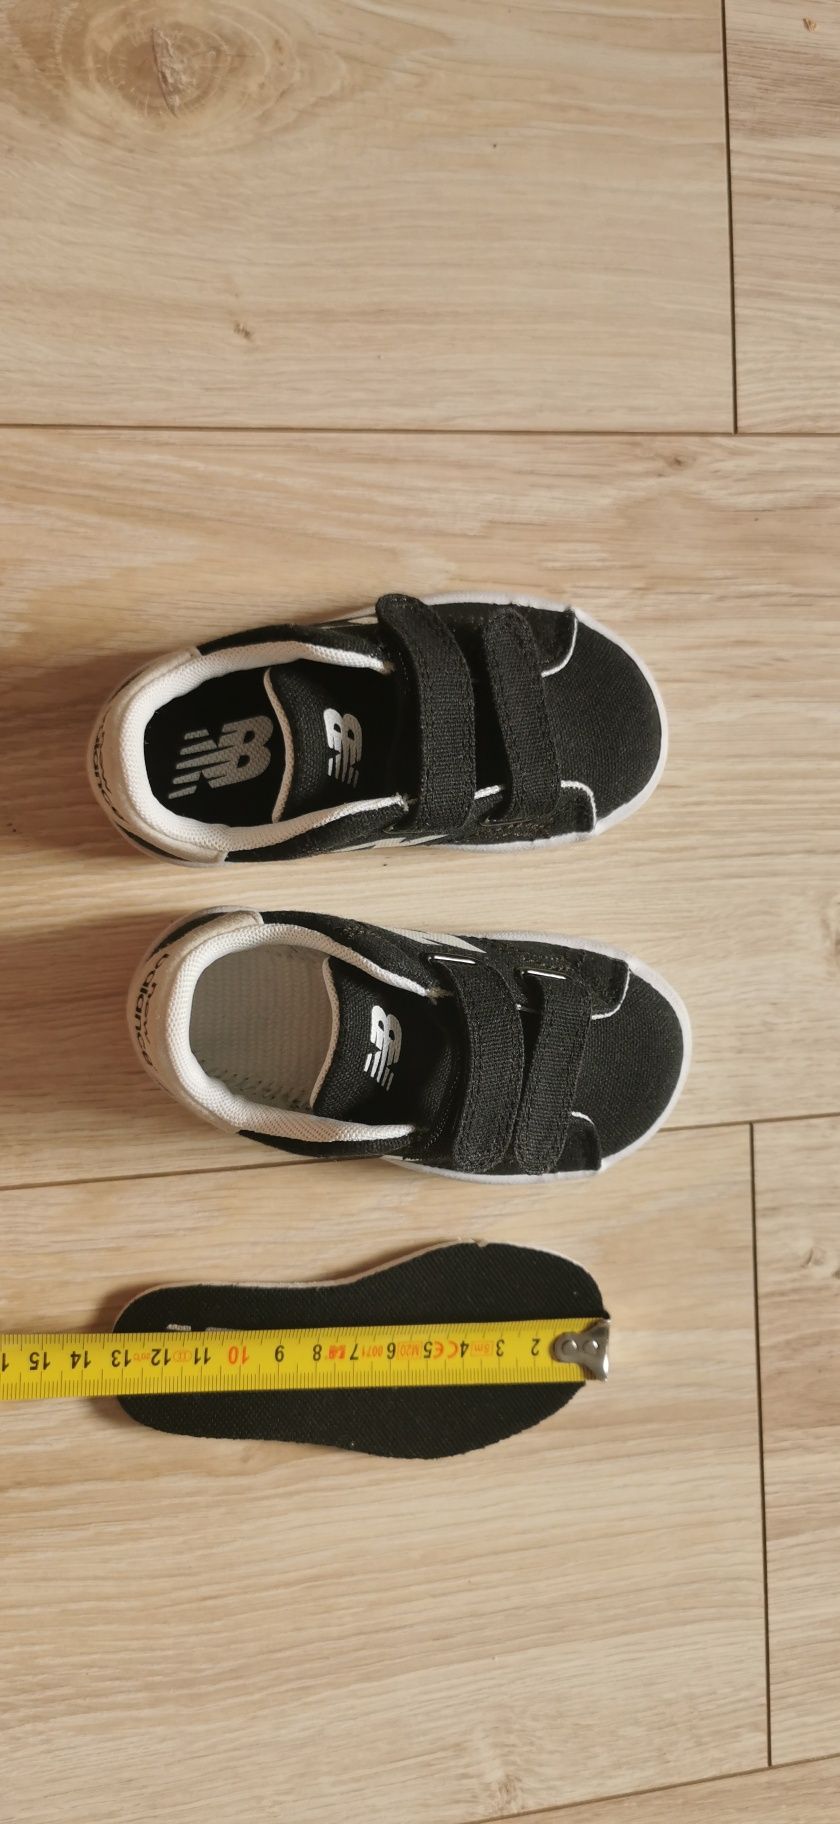 Czarne nowe buty New Balance zapinane na rzepy, rozmiar 21